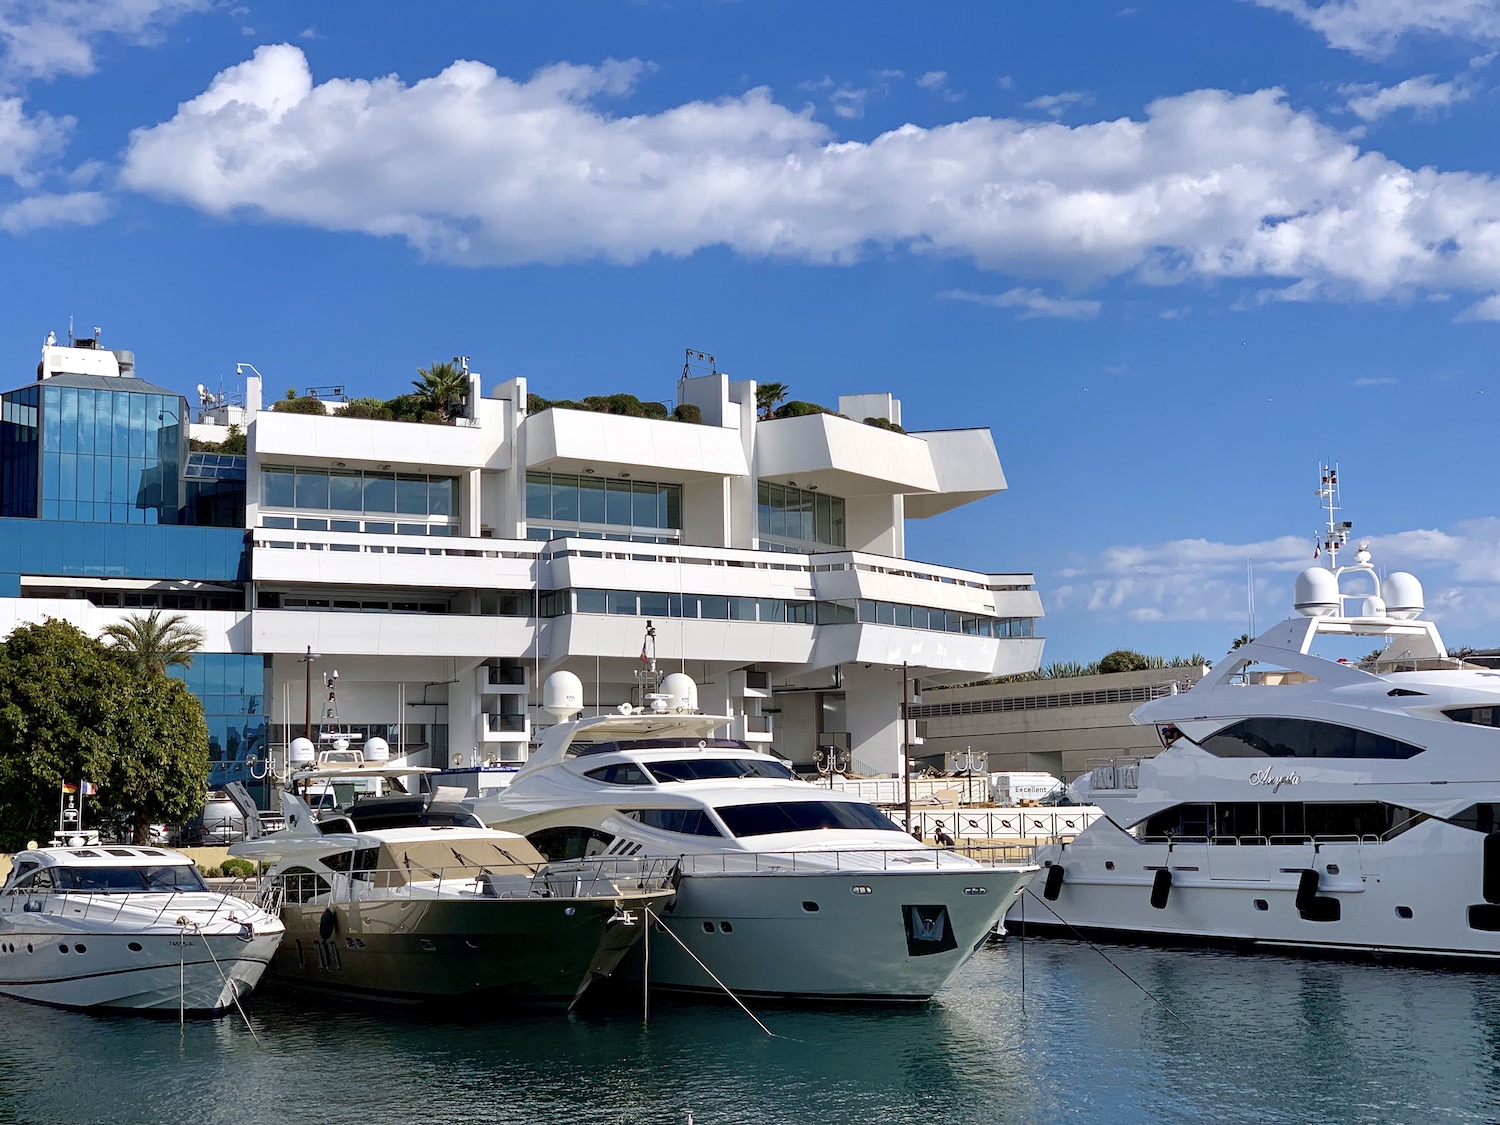 Port of Cannes and Palais des Festivals during MIPIM